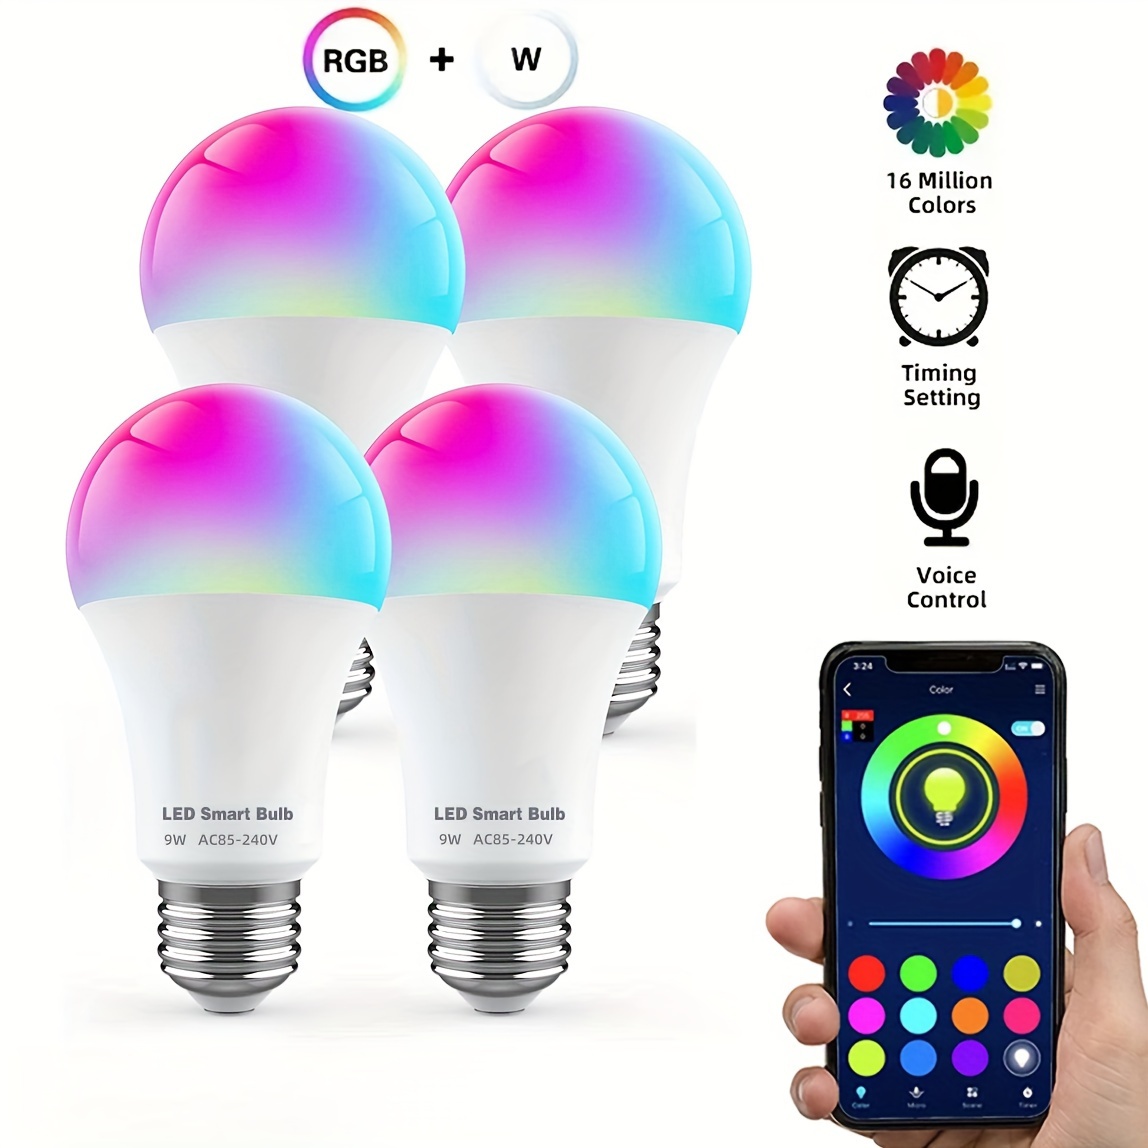 Qué tipos de bombillas inteligentes hay y cuáles son mejores?